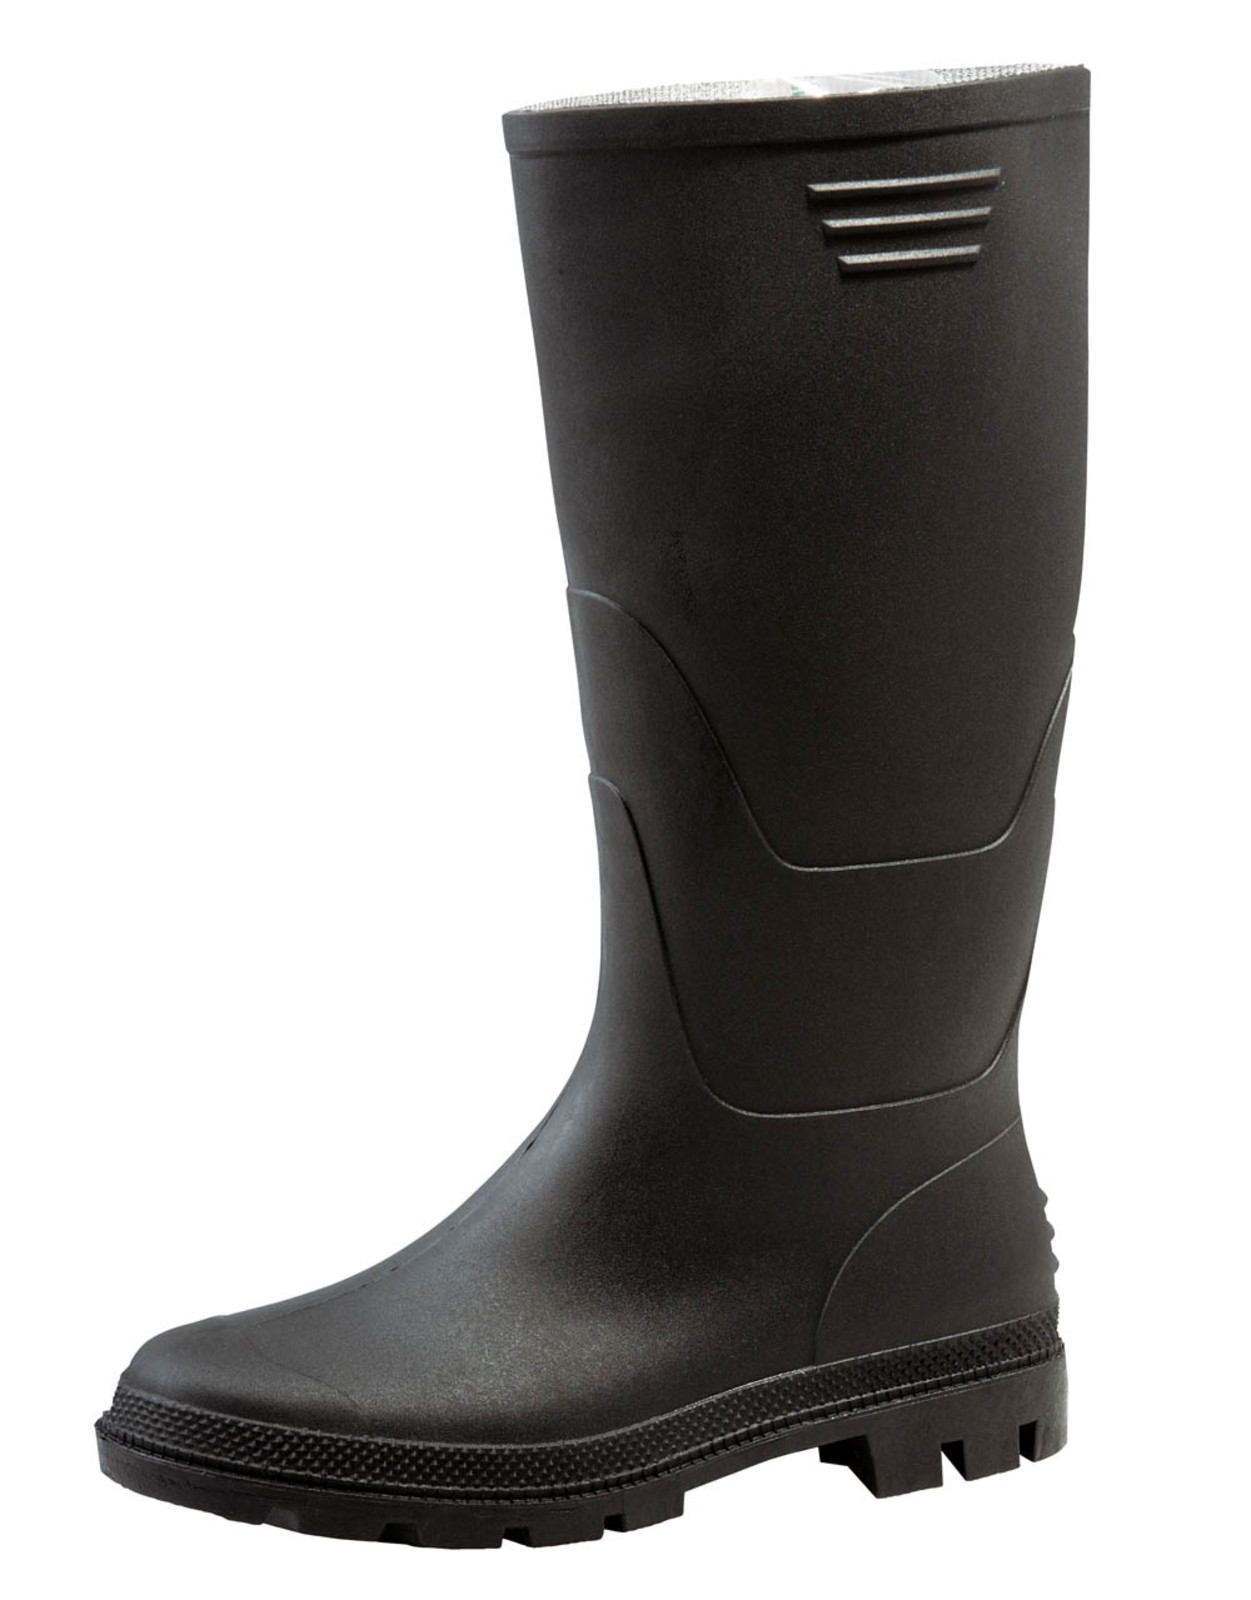 Gumáky Boots Ginocchio PVC - veľkosť: 43, farba: čierna